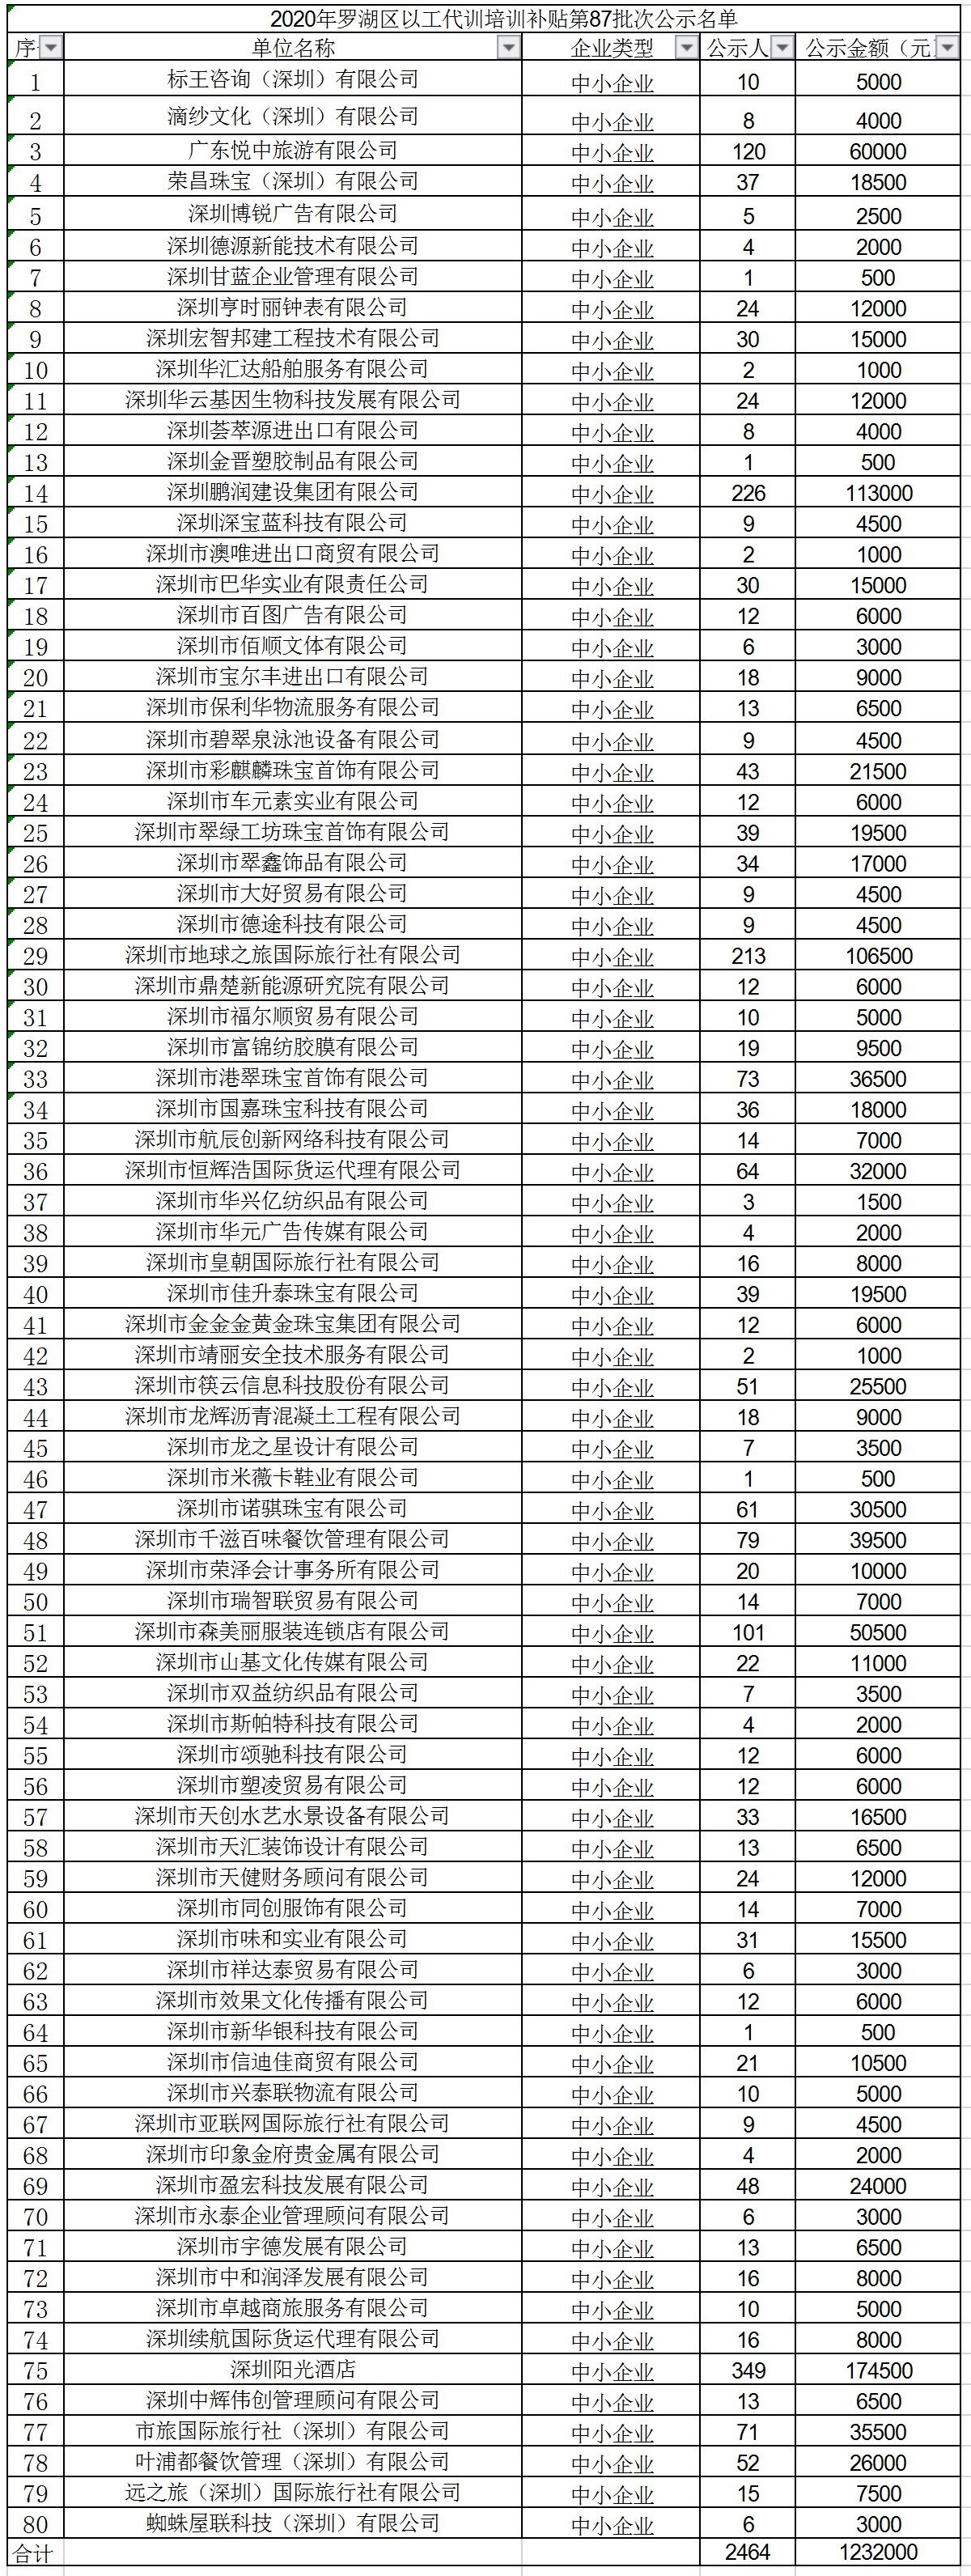 2020年深圳市罗湖区以工代训培训补贴第87批次公示名单.jpg